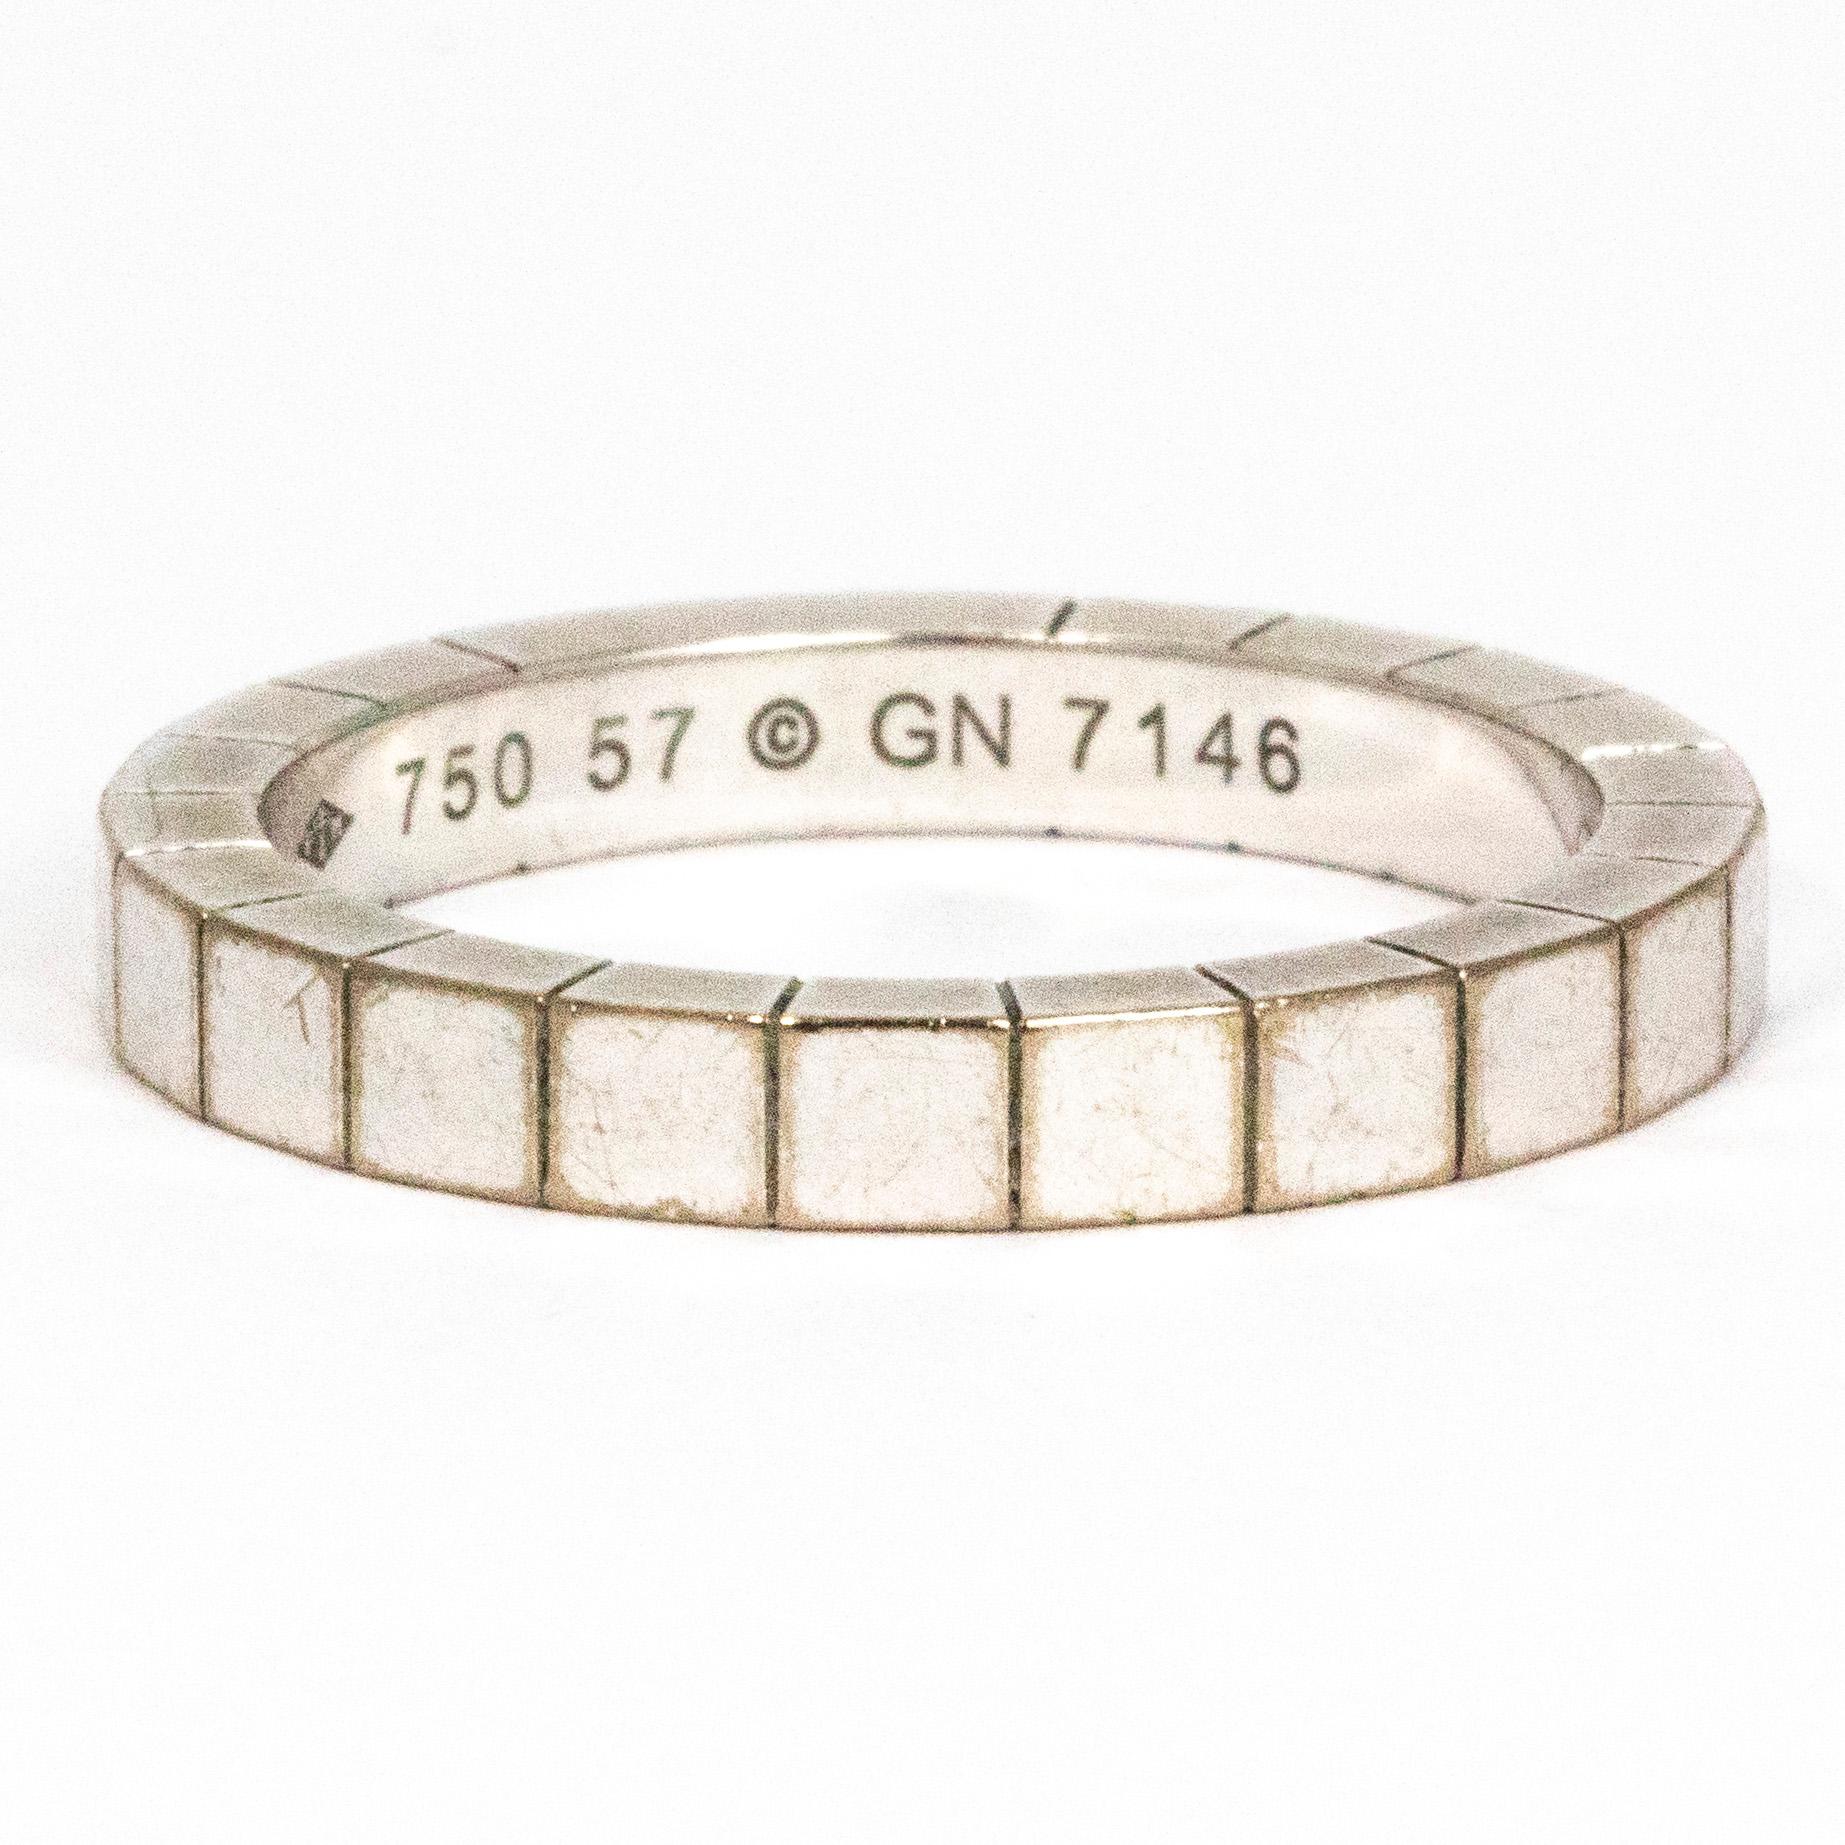 Dieser wunderschöne Ring von Cartier stammt aus der Collection'S Lanieres und zeichnet sich durch sein charakteristisches Lanieres-Design aus 18 Karat Weißgold aus. Auf der Innenseite des Bandes befindet sich das Cartier-Logo GN7148. Dieses Design